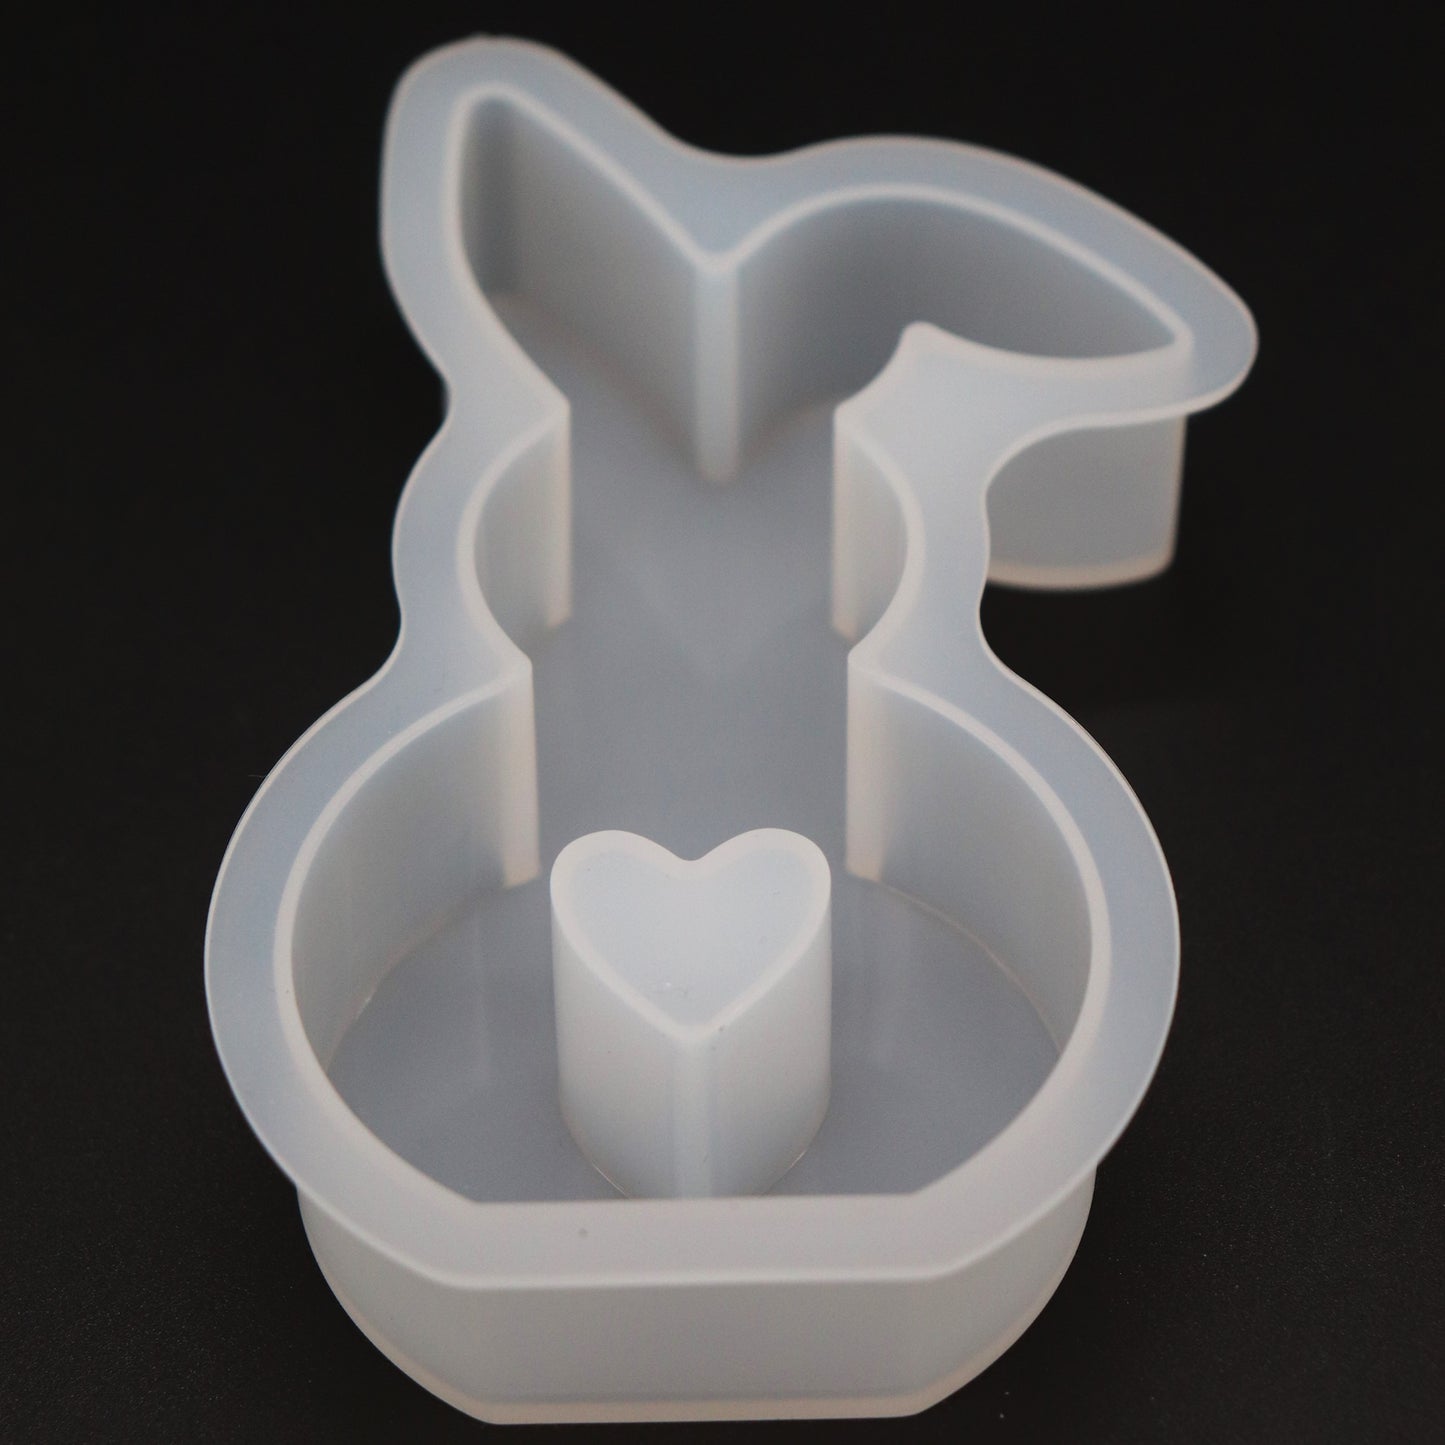 Silikonform Hase mit Herz Knickohr Gießform Ostern Deko für Raysin ca. 12 cm